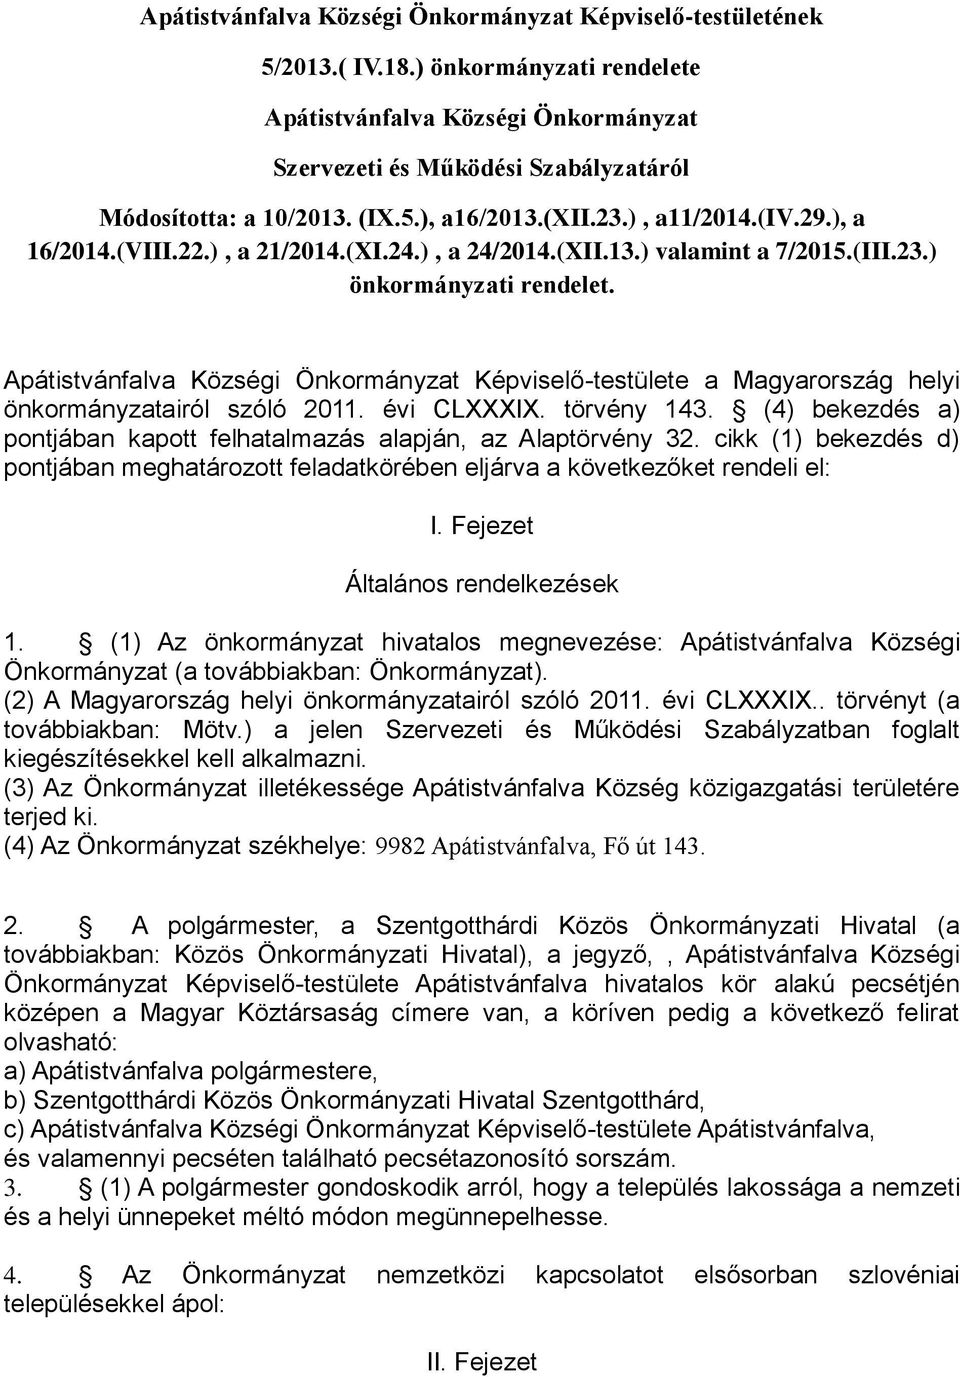 Apátistvánfalva Községi Önkormányzat Képviselő-testülete a Magyarország helyi önkormányzatairól szóló 2011. évi CLXXXIX. törvény 143.